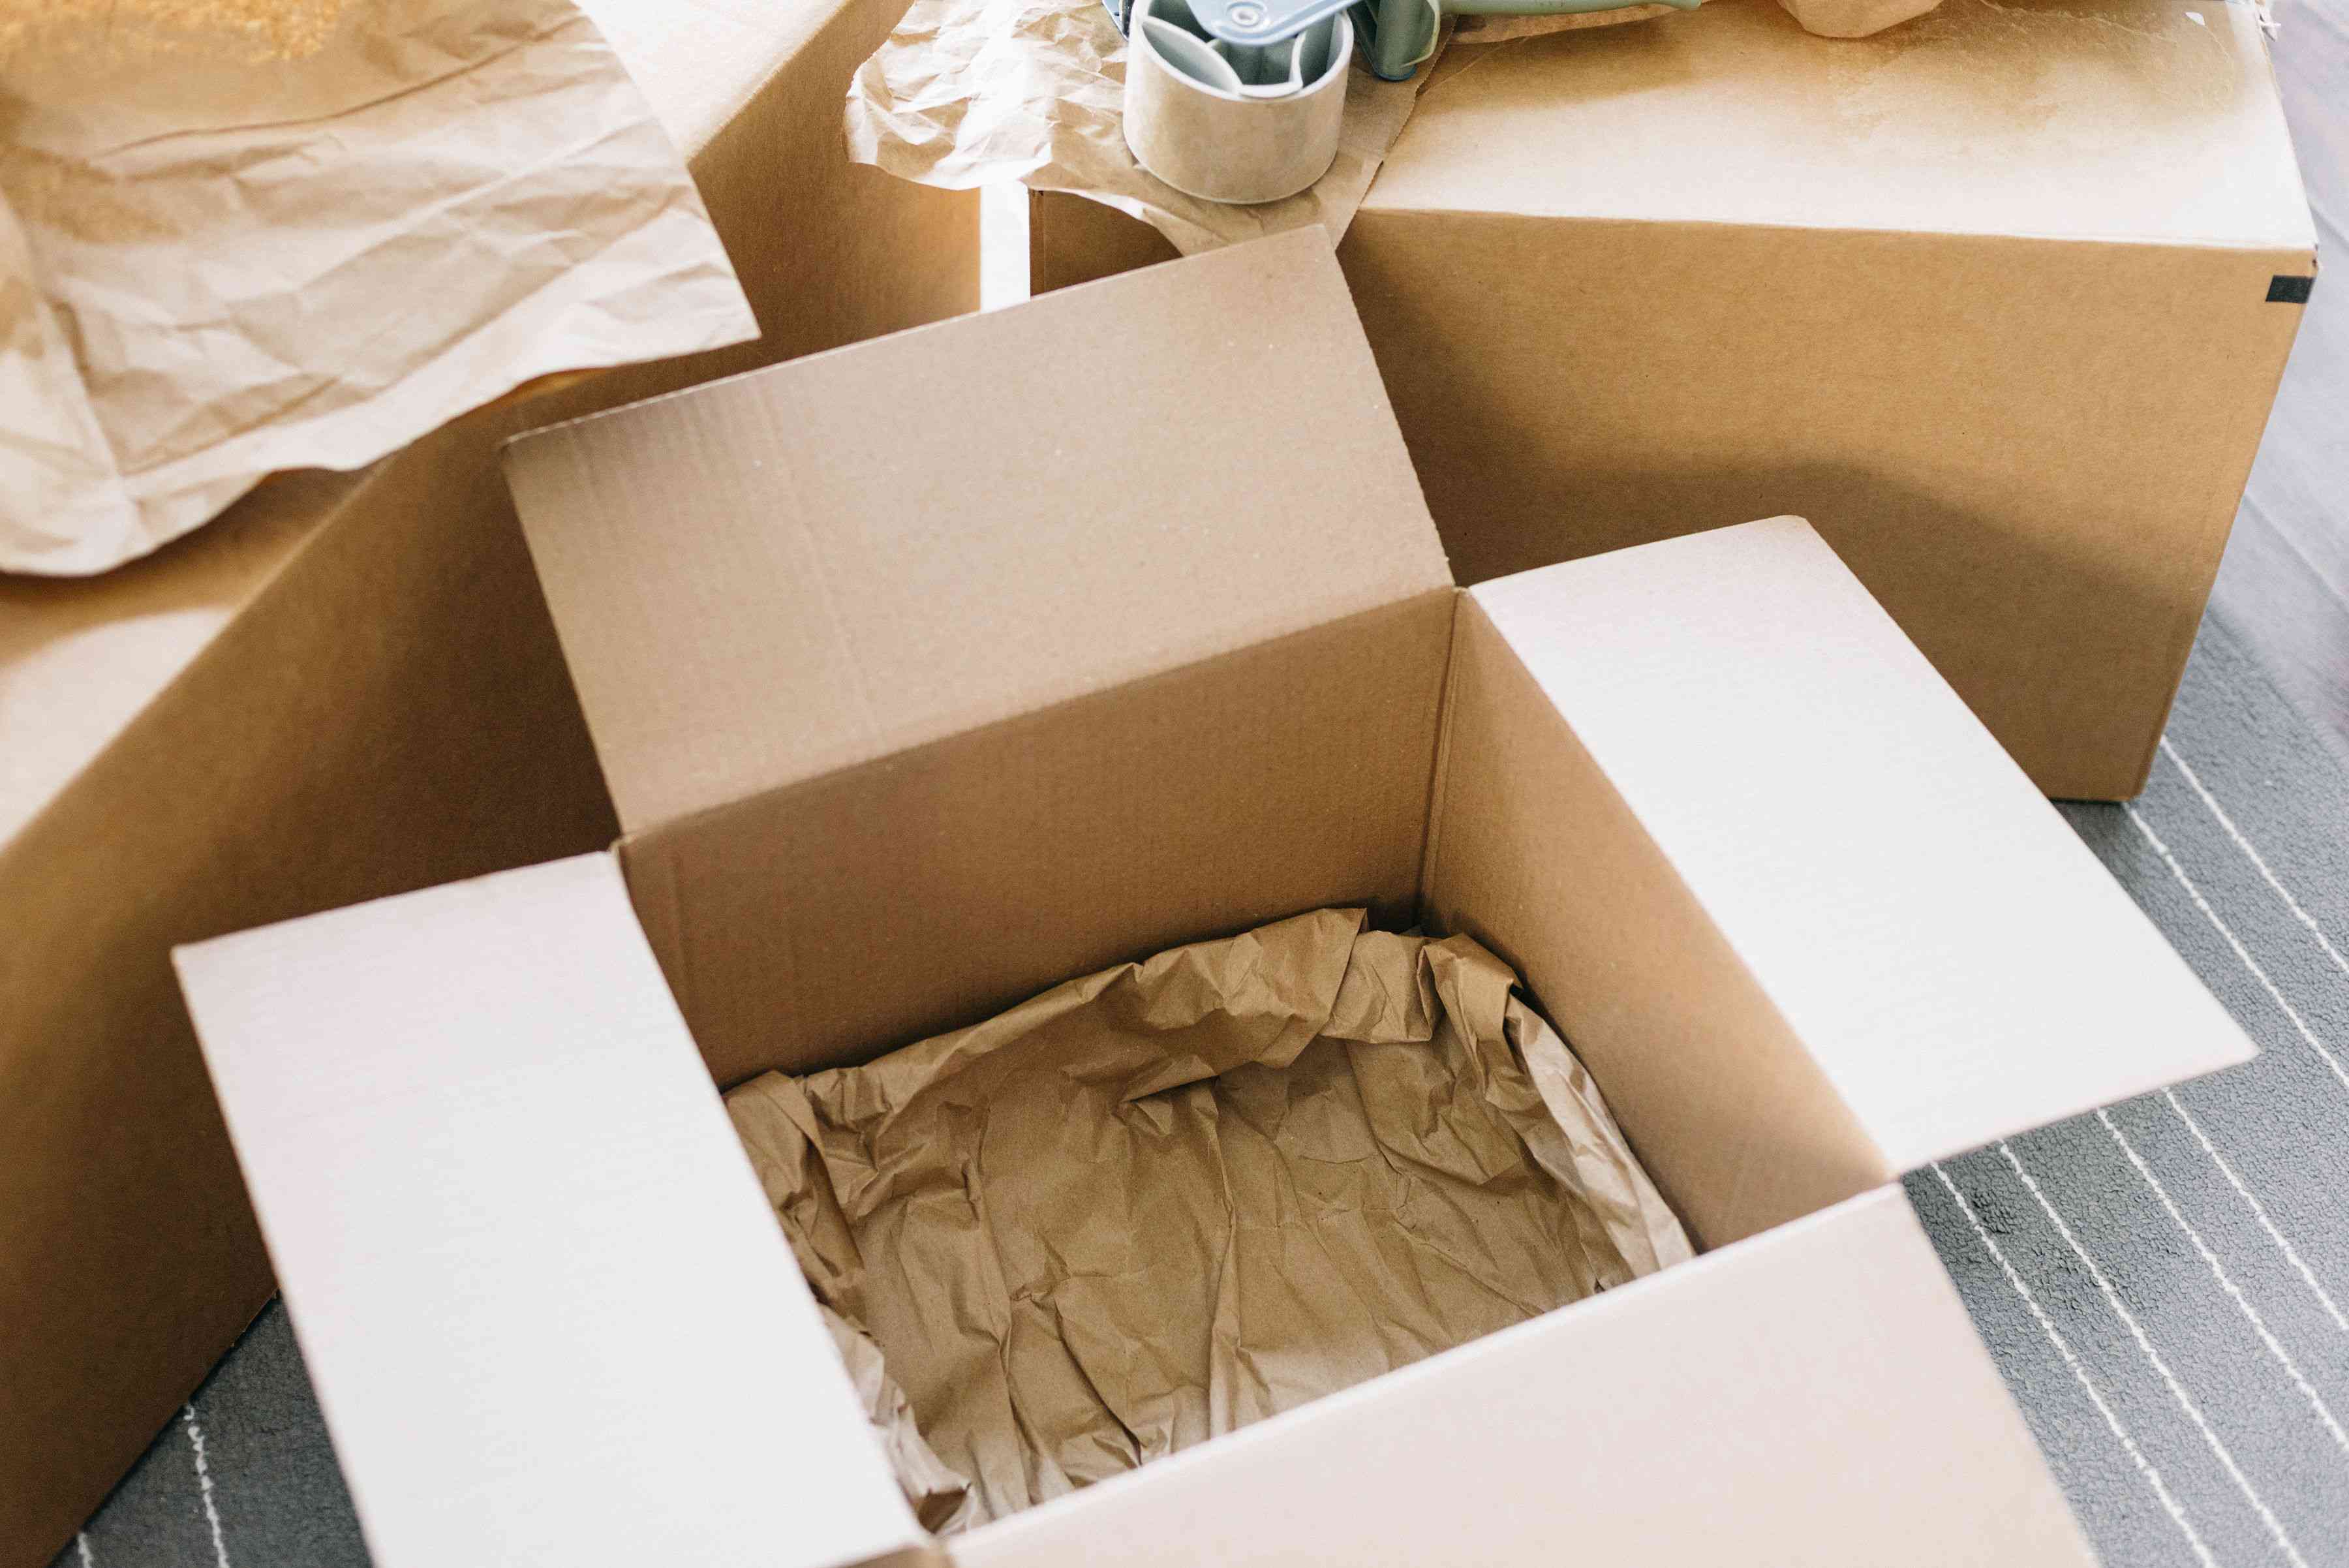 Packaging items. Упаковка вещей. Коробки для упаковки вещей. Коробки для перевоза посуды. Упаковочная бумага в коробке.